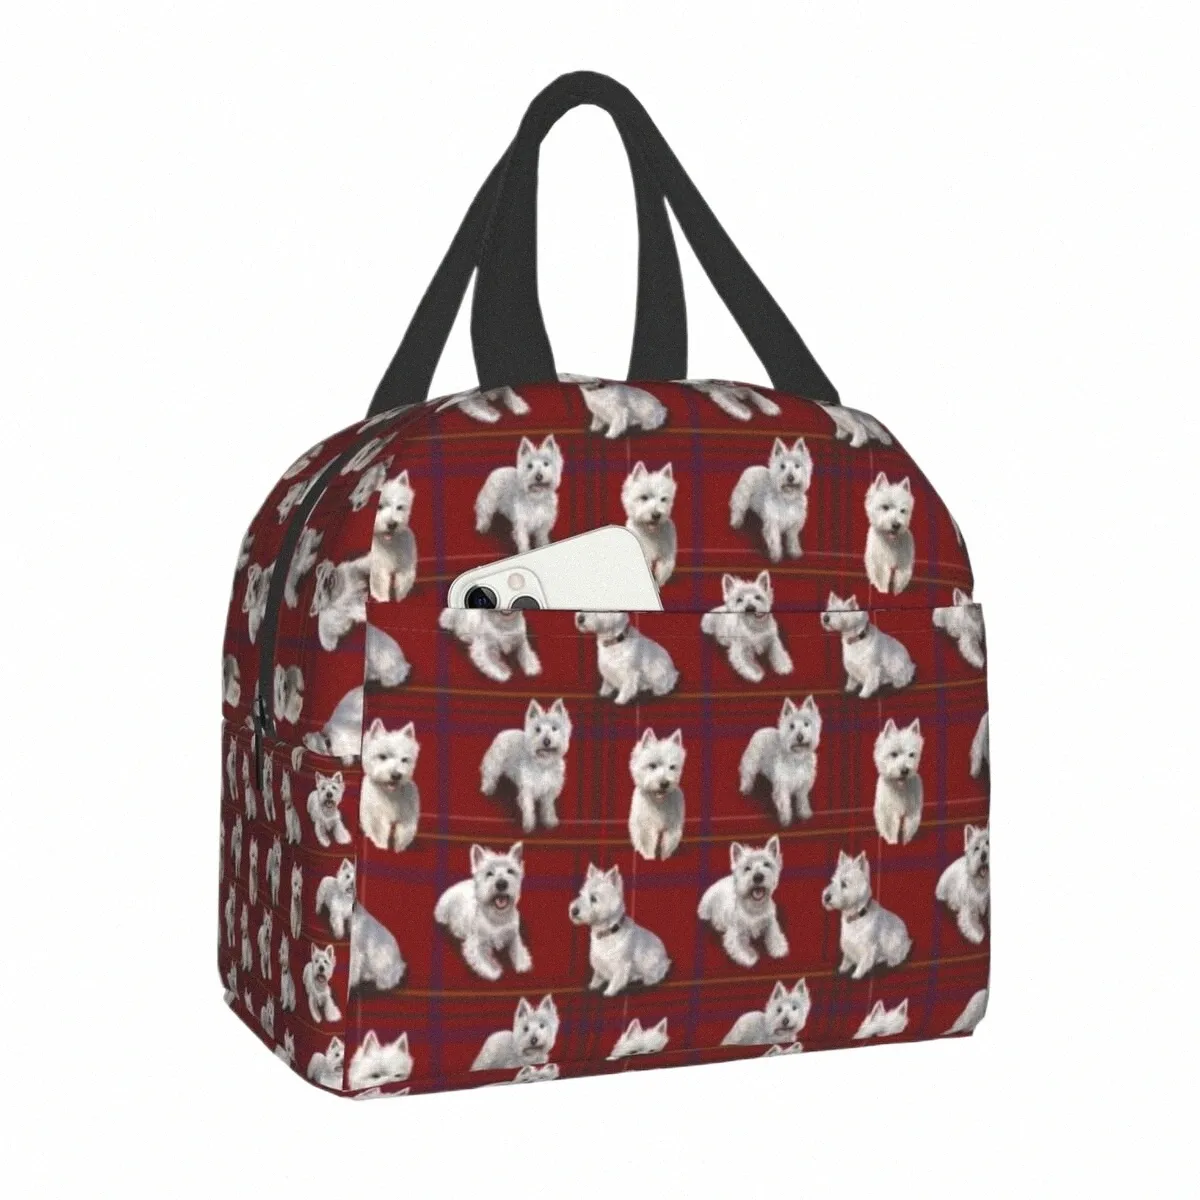 Вест-хайленд-терьер Westie Изолированные сумки для обеда для женщин Портативный холодильник для собак Термальный ланч-бокс для еды Школа Сумка для хранения пикника f4RK #